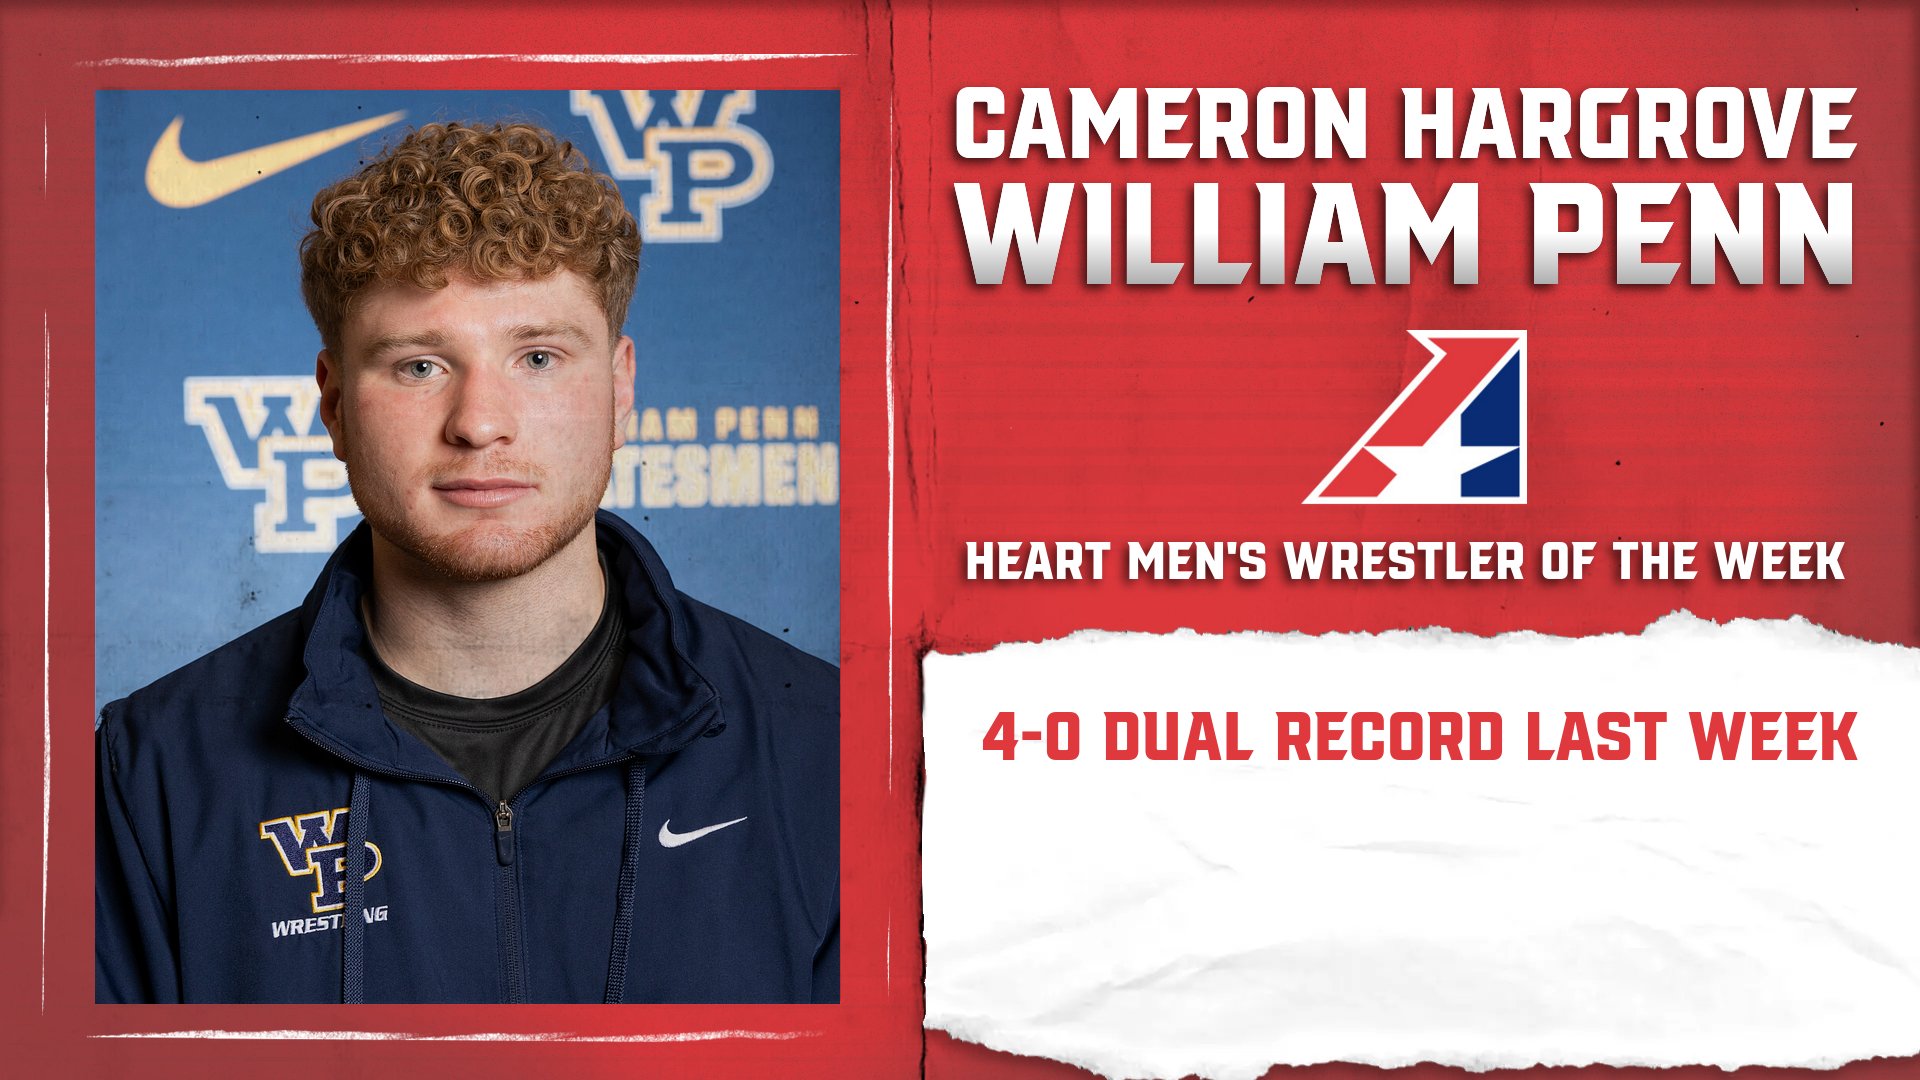 Cameron Hargrove of William Penn University Earns Heart Men’s Wrestler of the Week